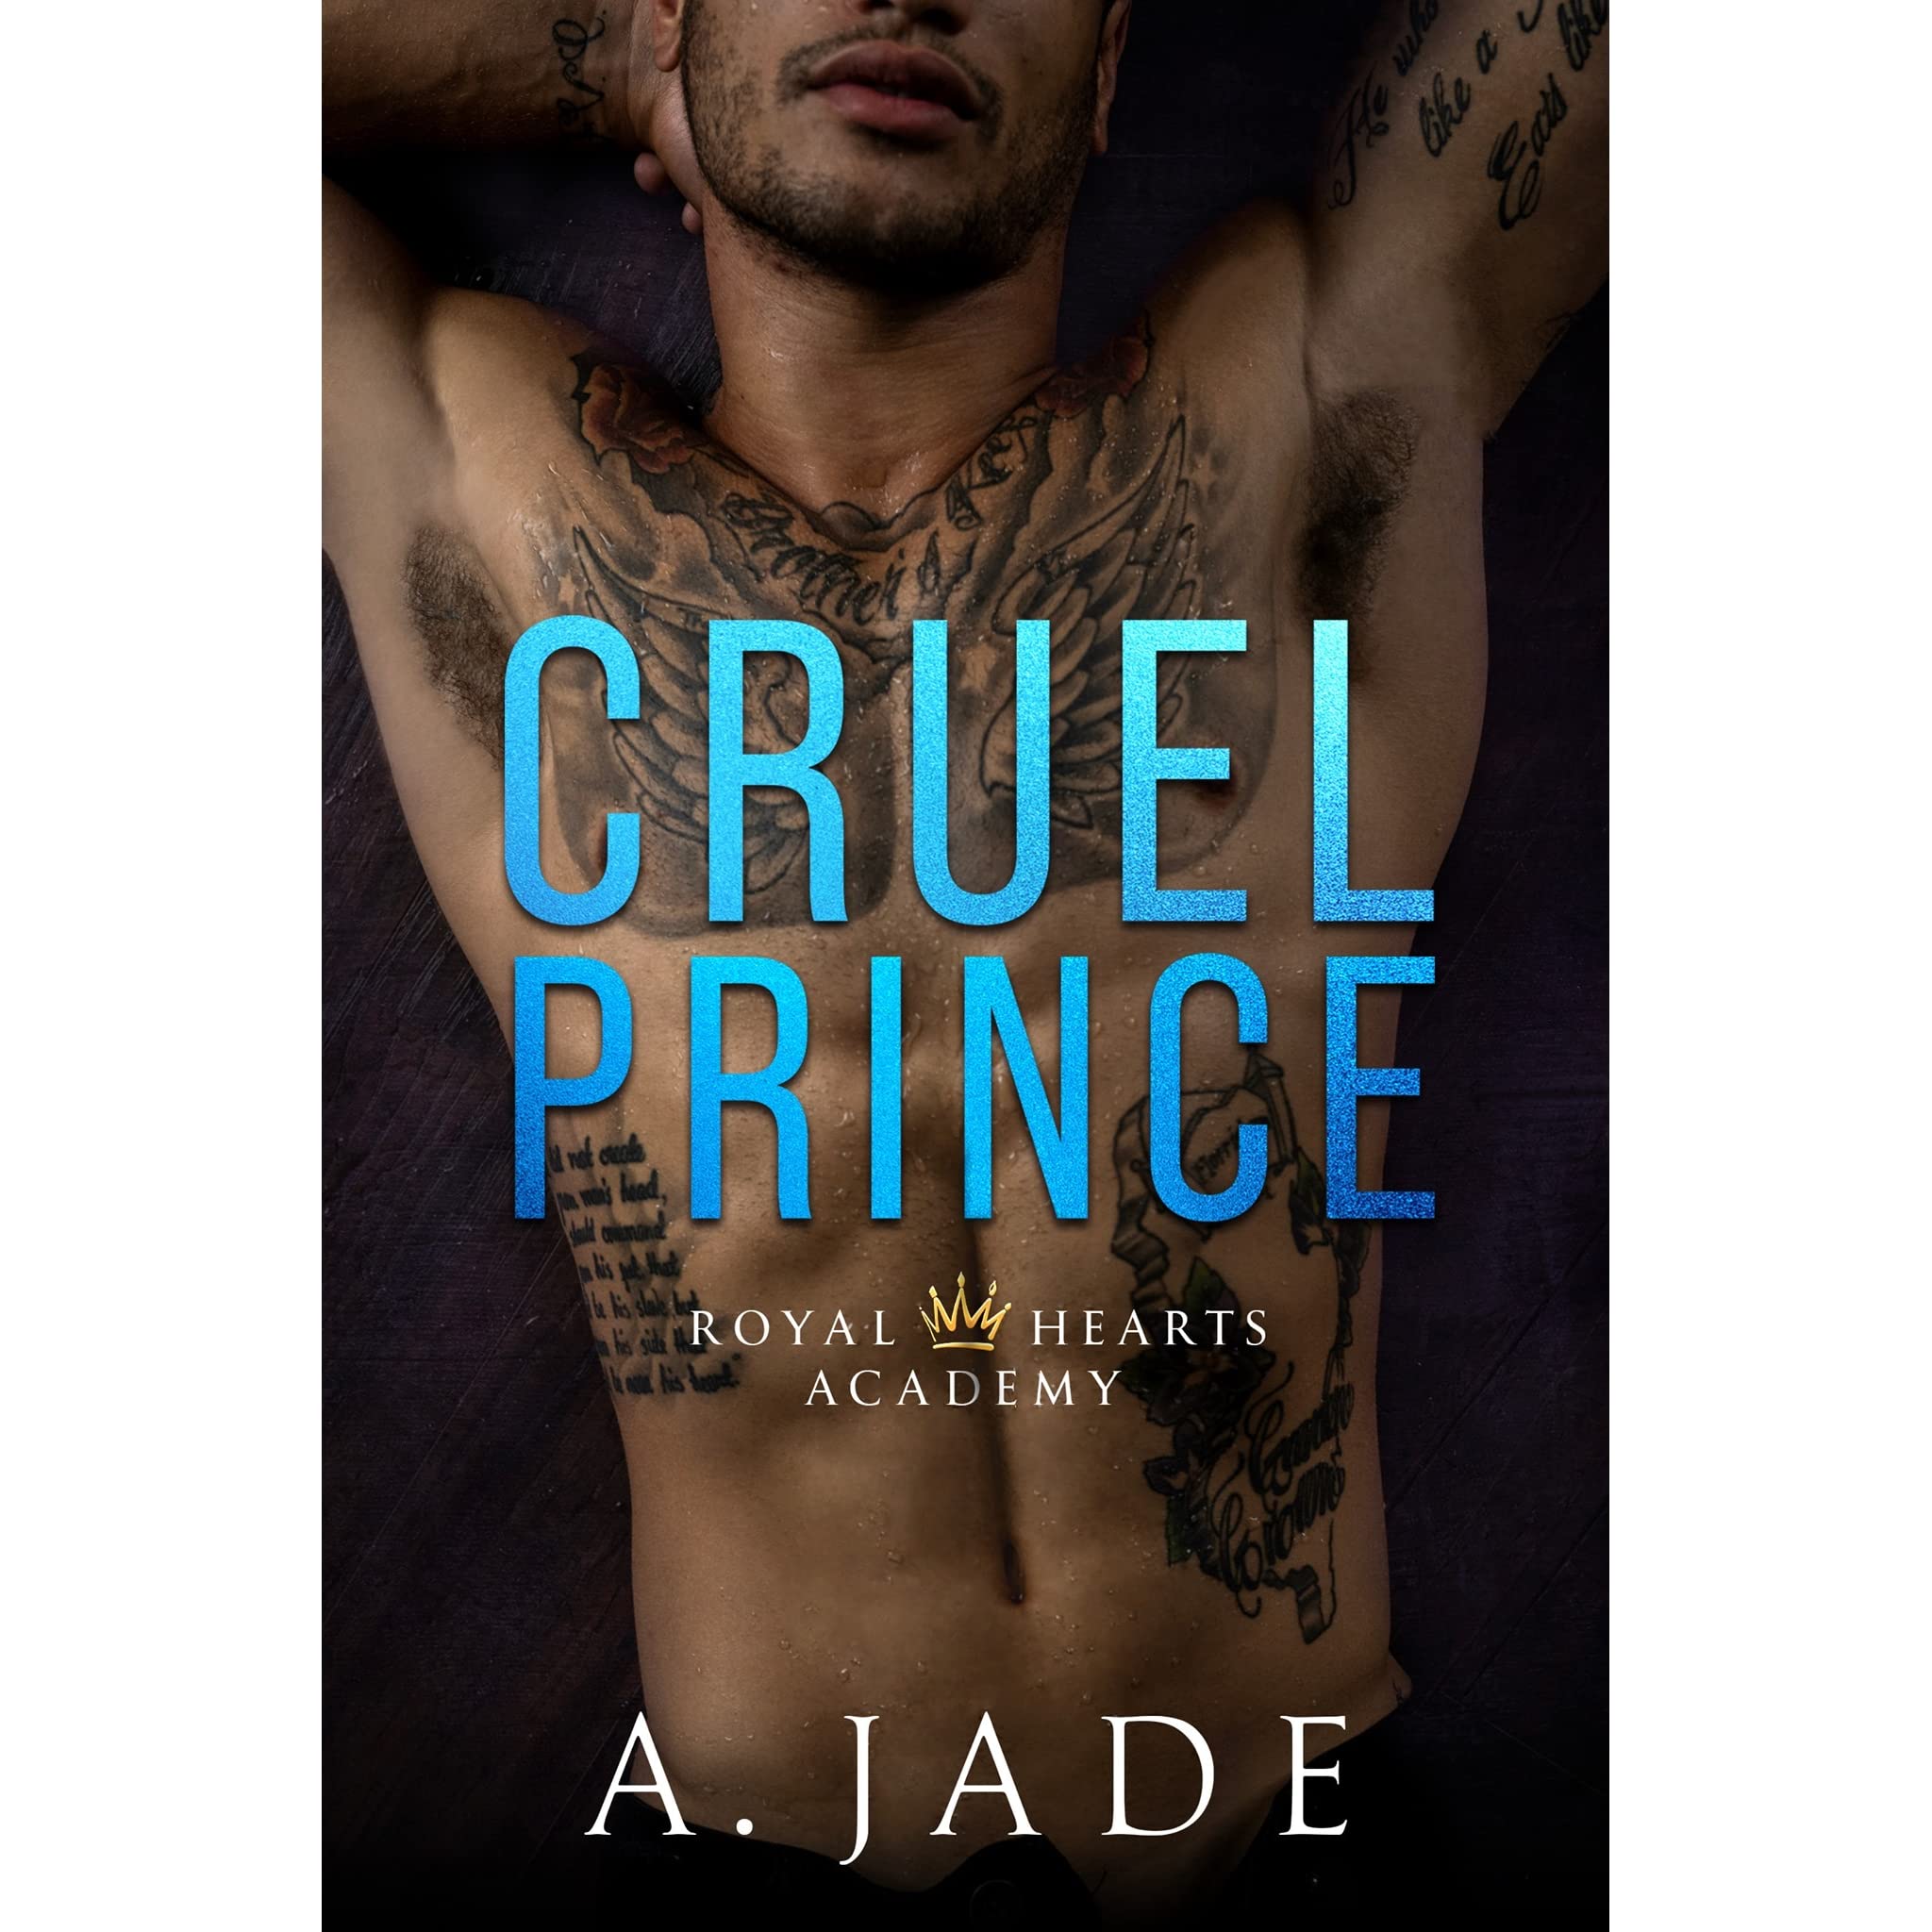 cruel prince by ashley jade